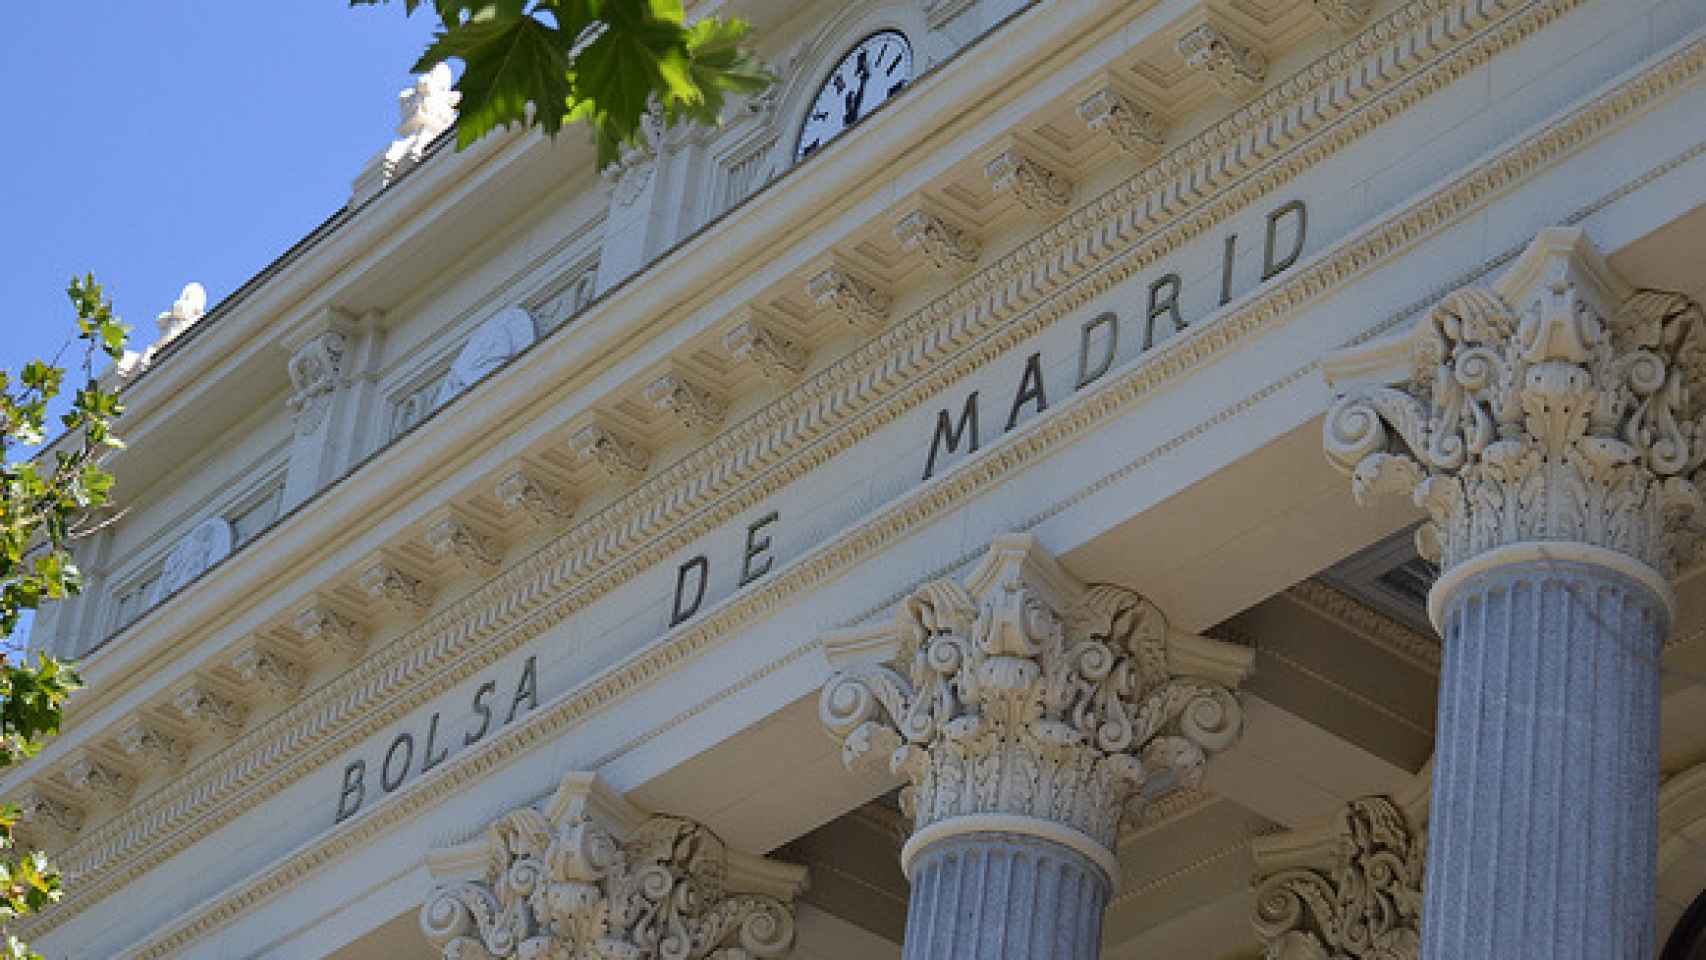 La Bolsa de Madrid en una imagen de archivo.